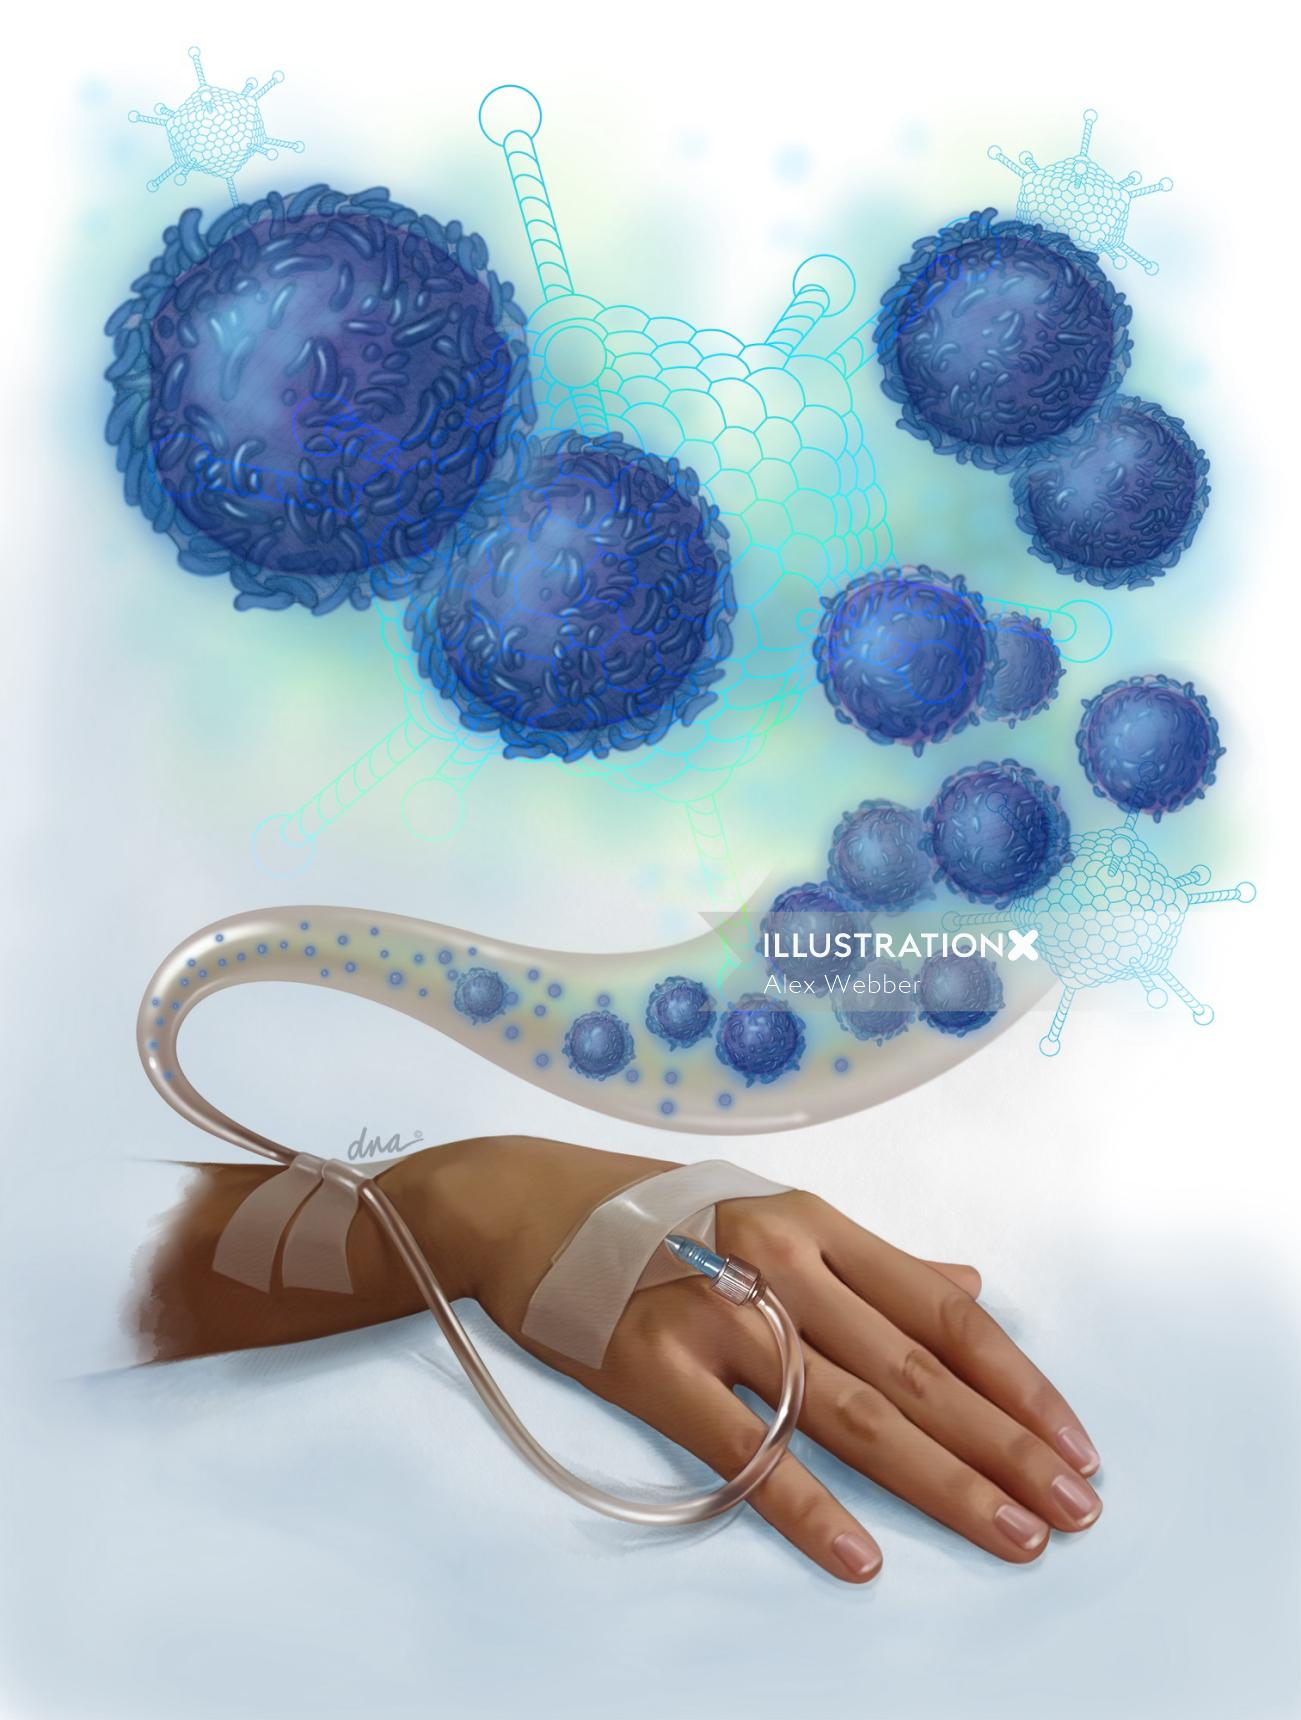 Alex Webber cria uma ilustração de terapia com células T